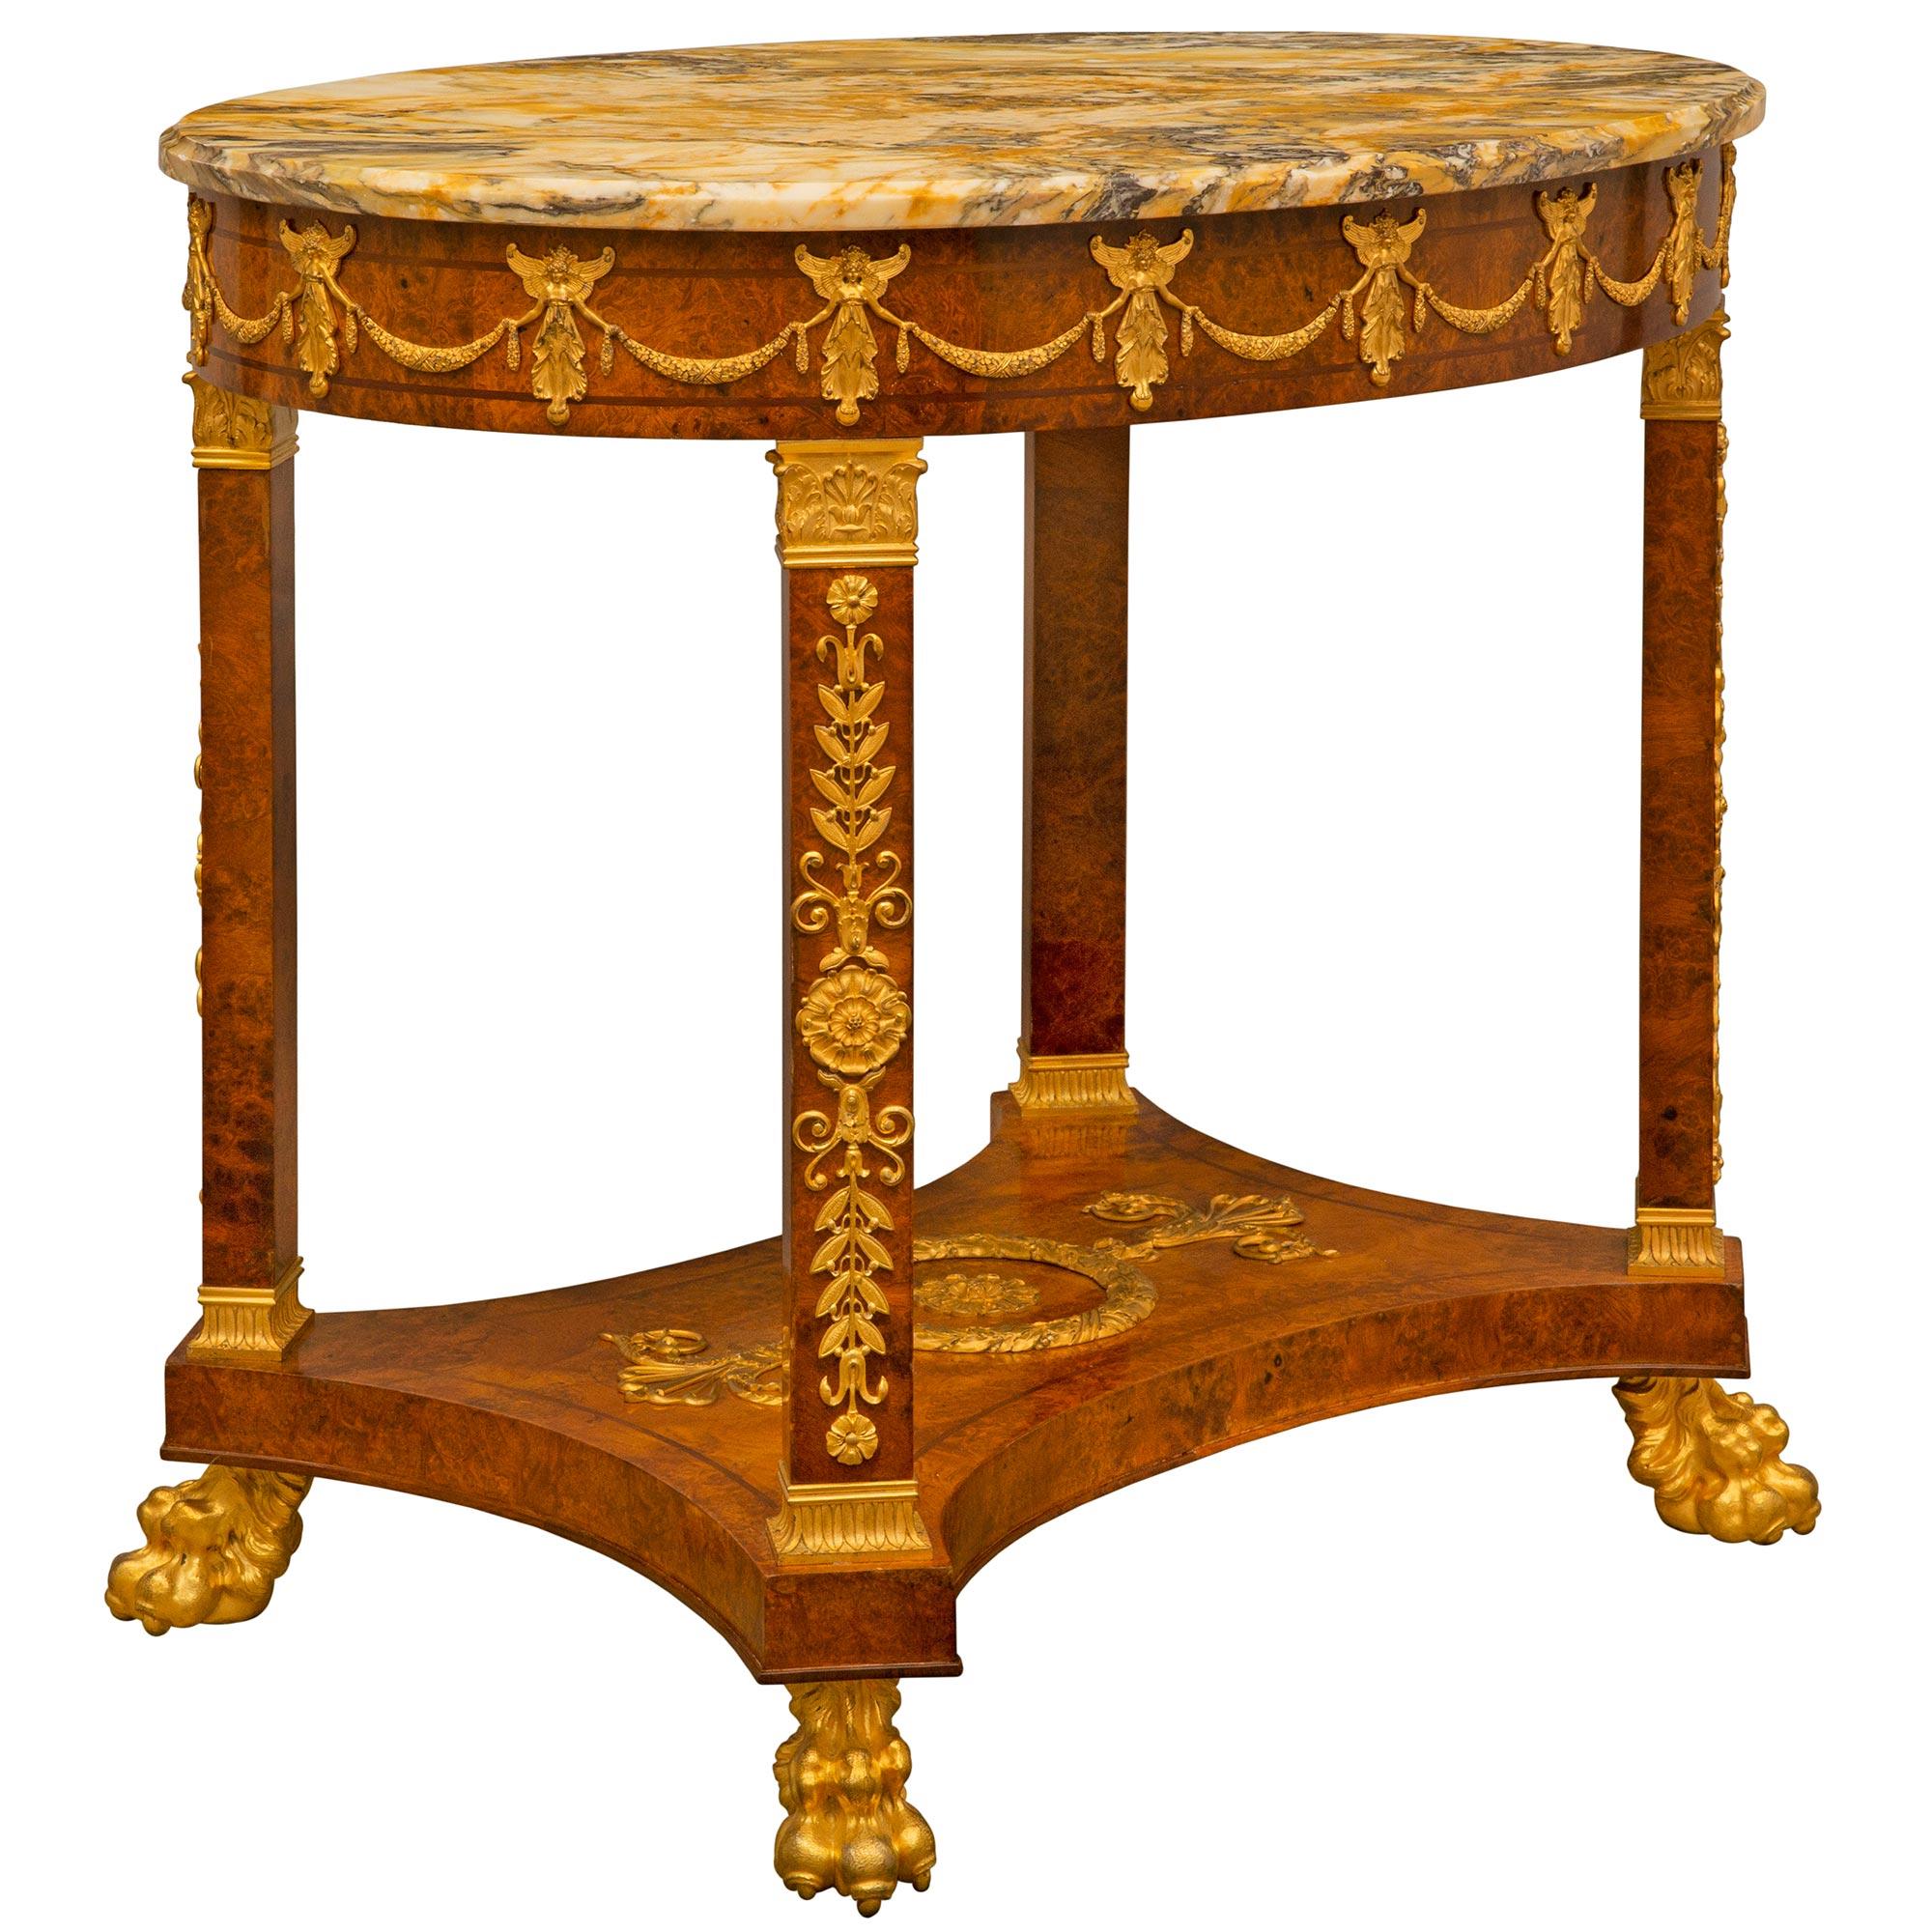 Ein hübscher und äußerst hochwertiger französischer Empire-Beistelltisch aus dem 19. Jahrhundert mit Wurzelholz, Ormolu und Jaune de Sienne-Marmor. Der länglich geformte Tisch steht auf eindrucksvollen, reich ziselierten Ormolu-Füßen unter